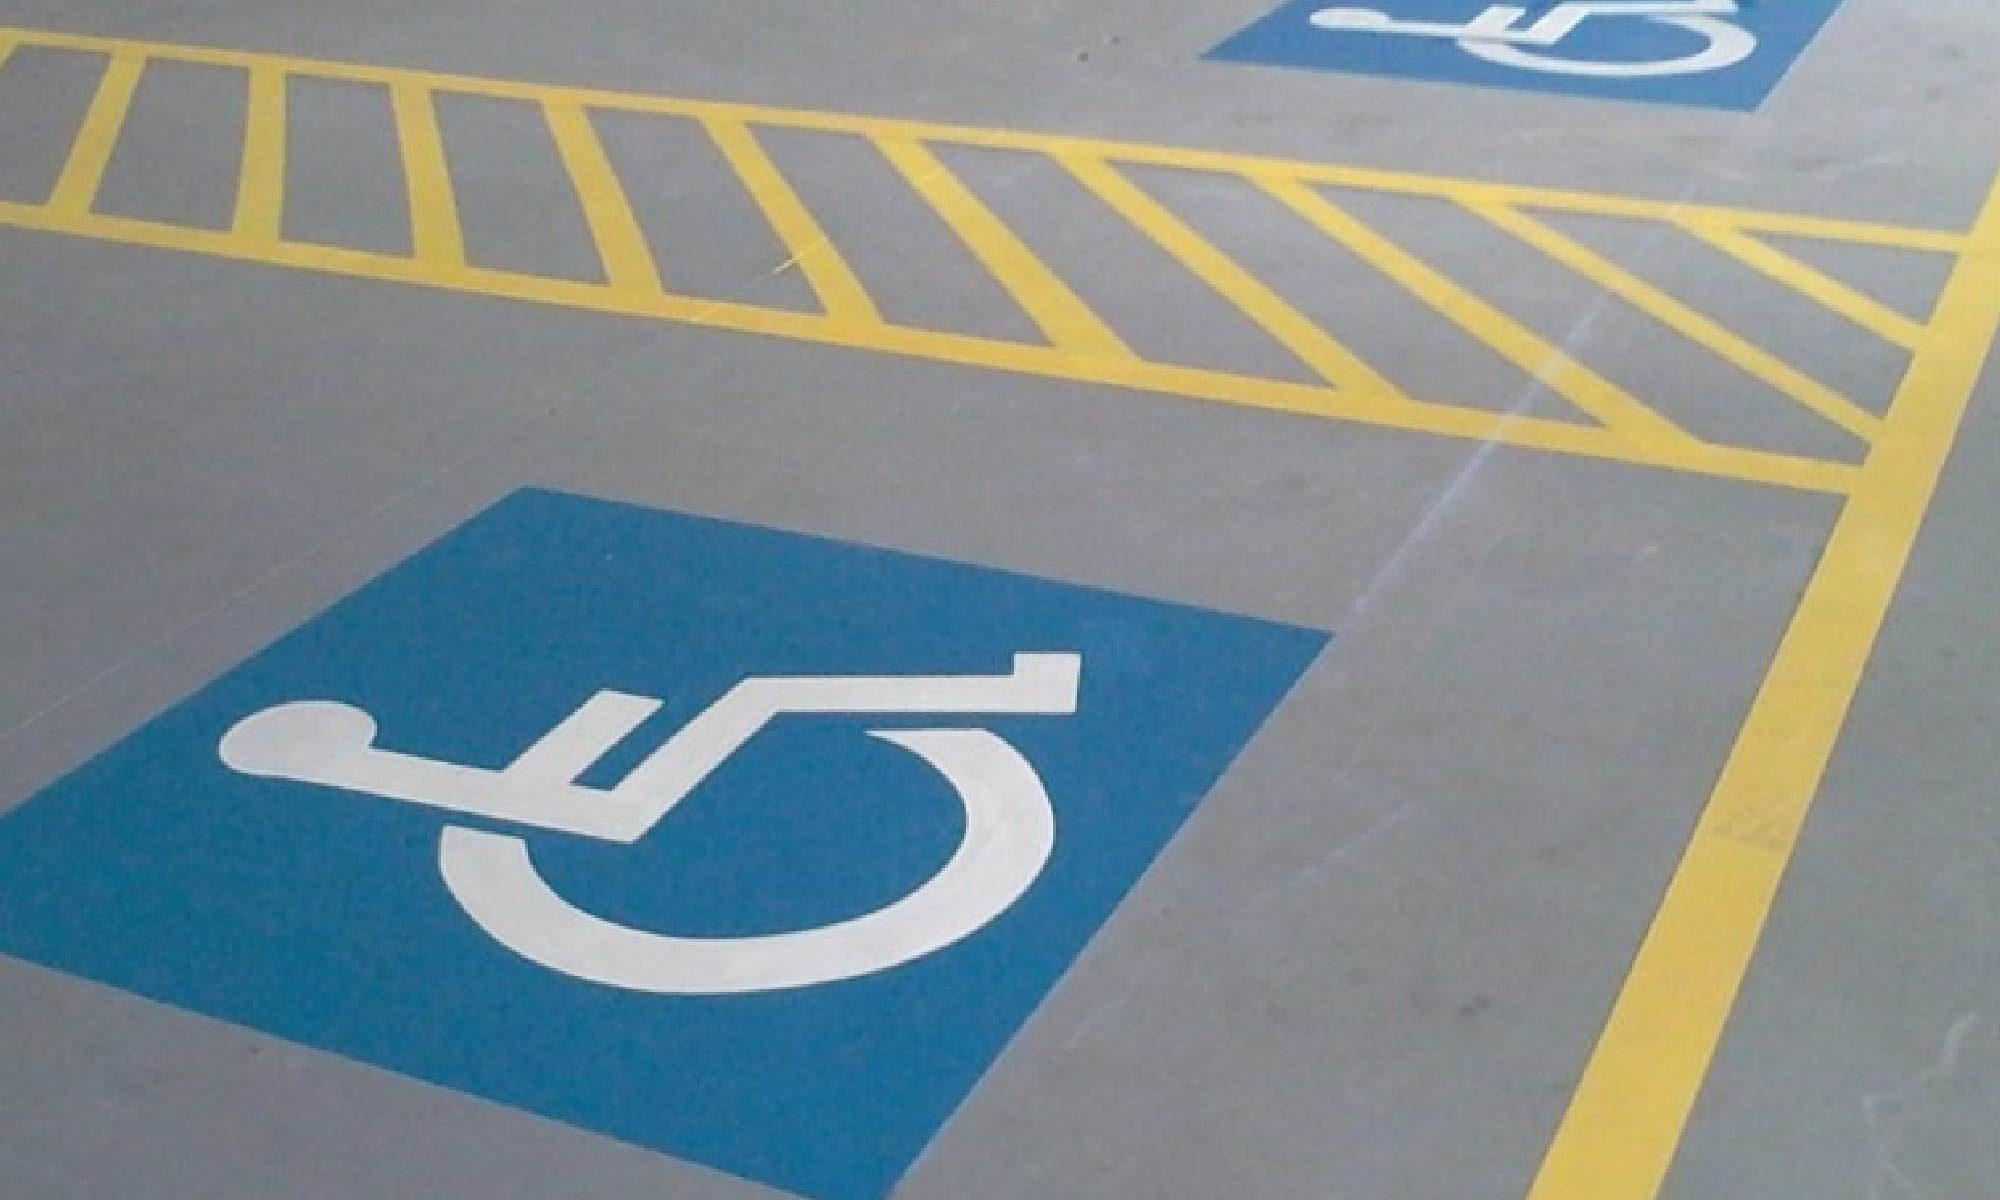 foto de um estacionamento com vagas reservadas para pessoas com deficiência. Está escrito: "Cartão de estacionamento para pessoas com deficiência" #direitospcd e há a logo da retina brasil